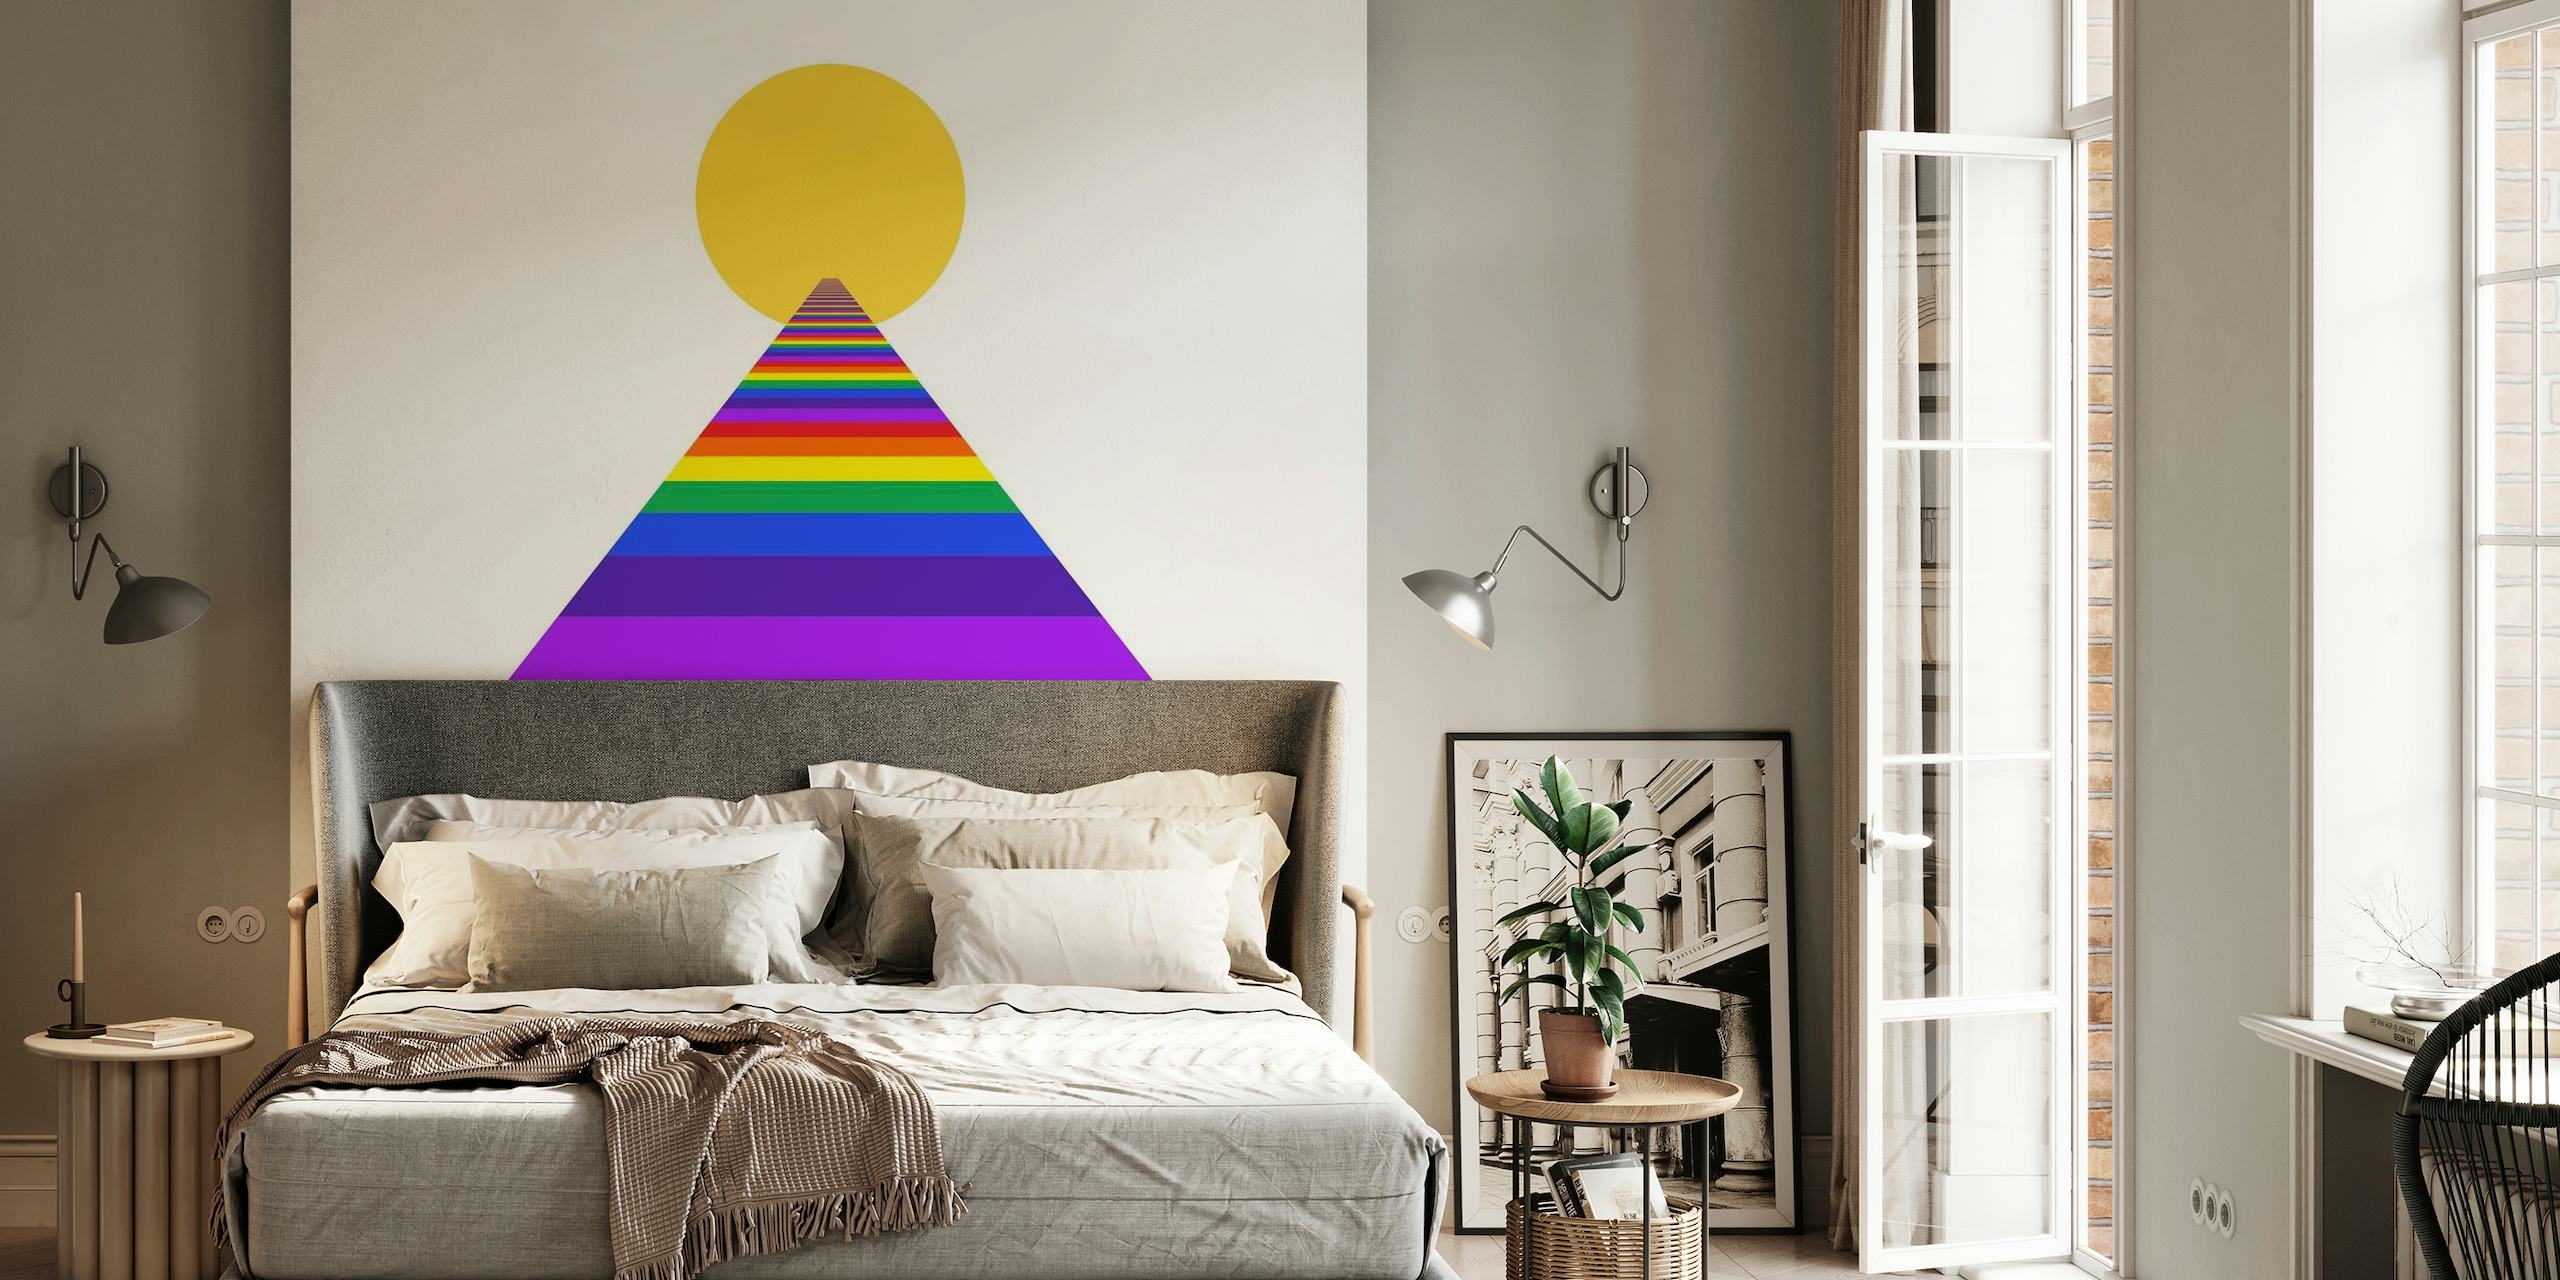 Kolorowa fototapeta „Podnieś wibracje” z tęczową piramidą i słońcem